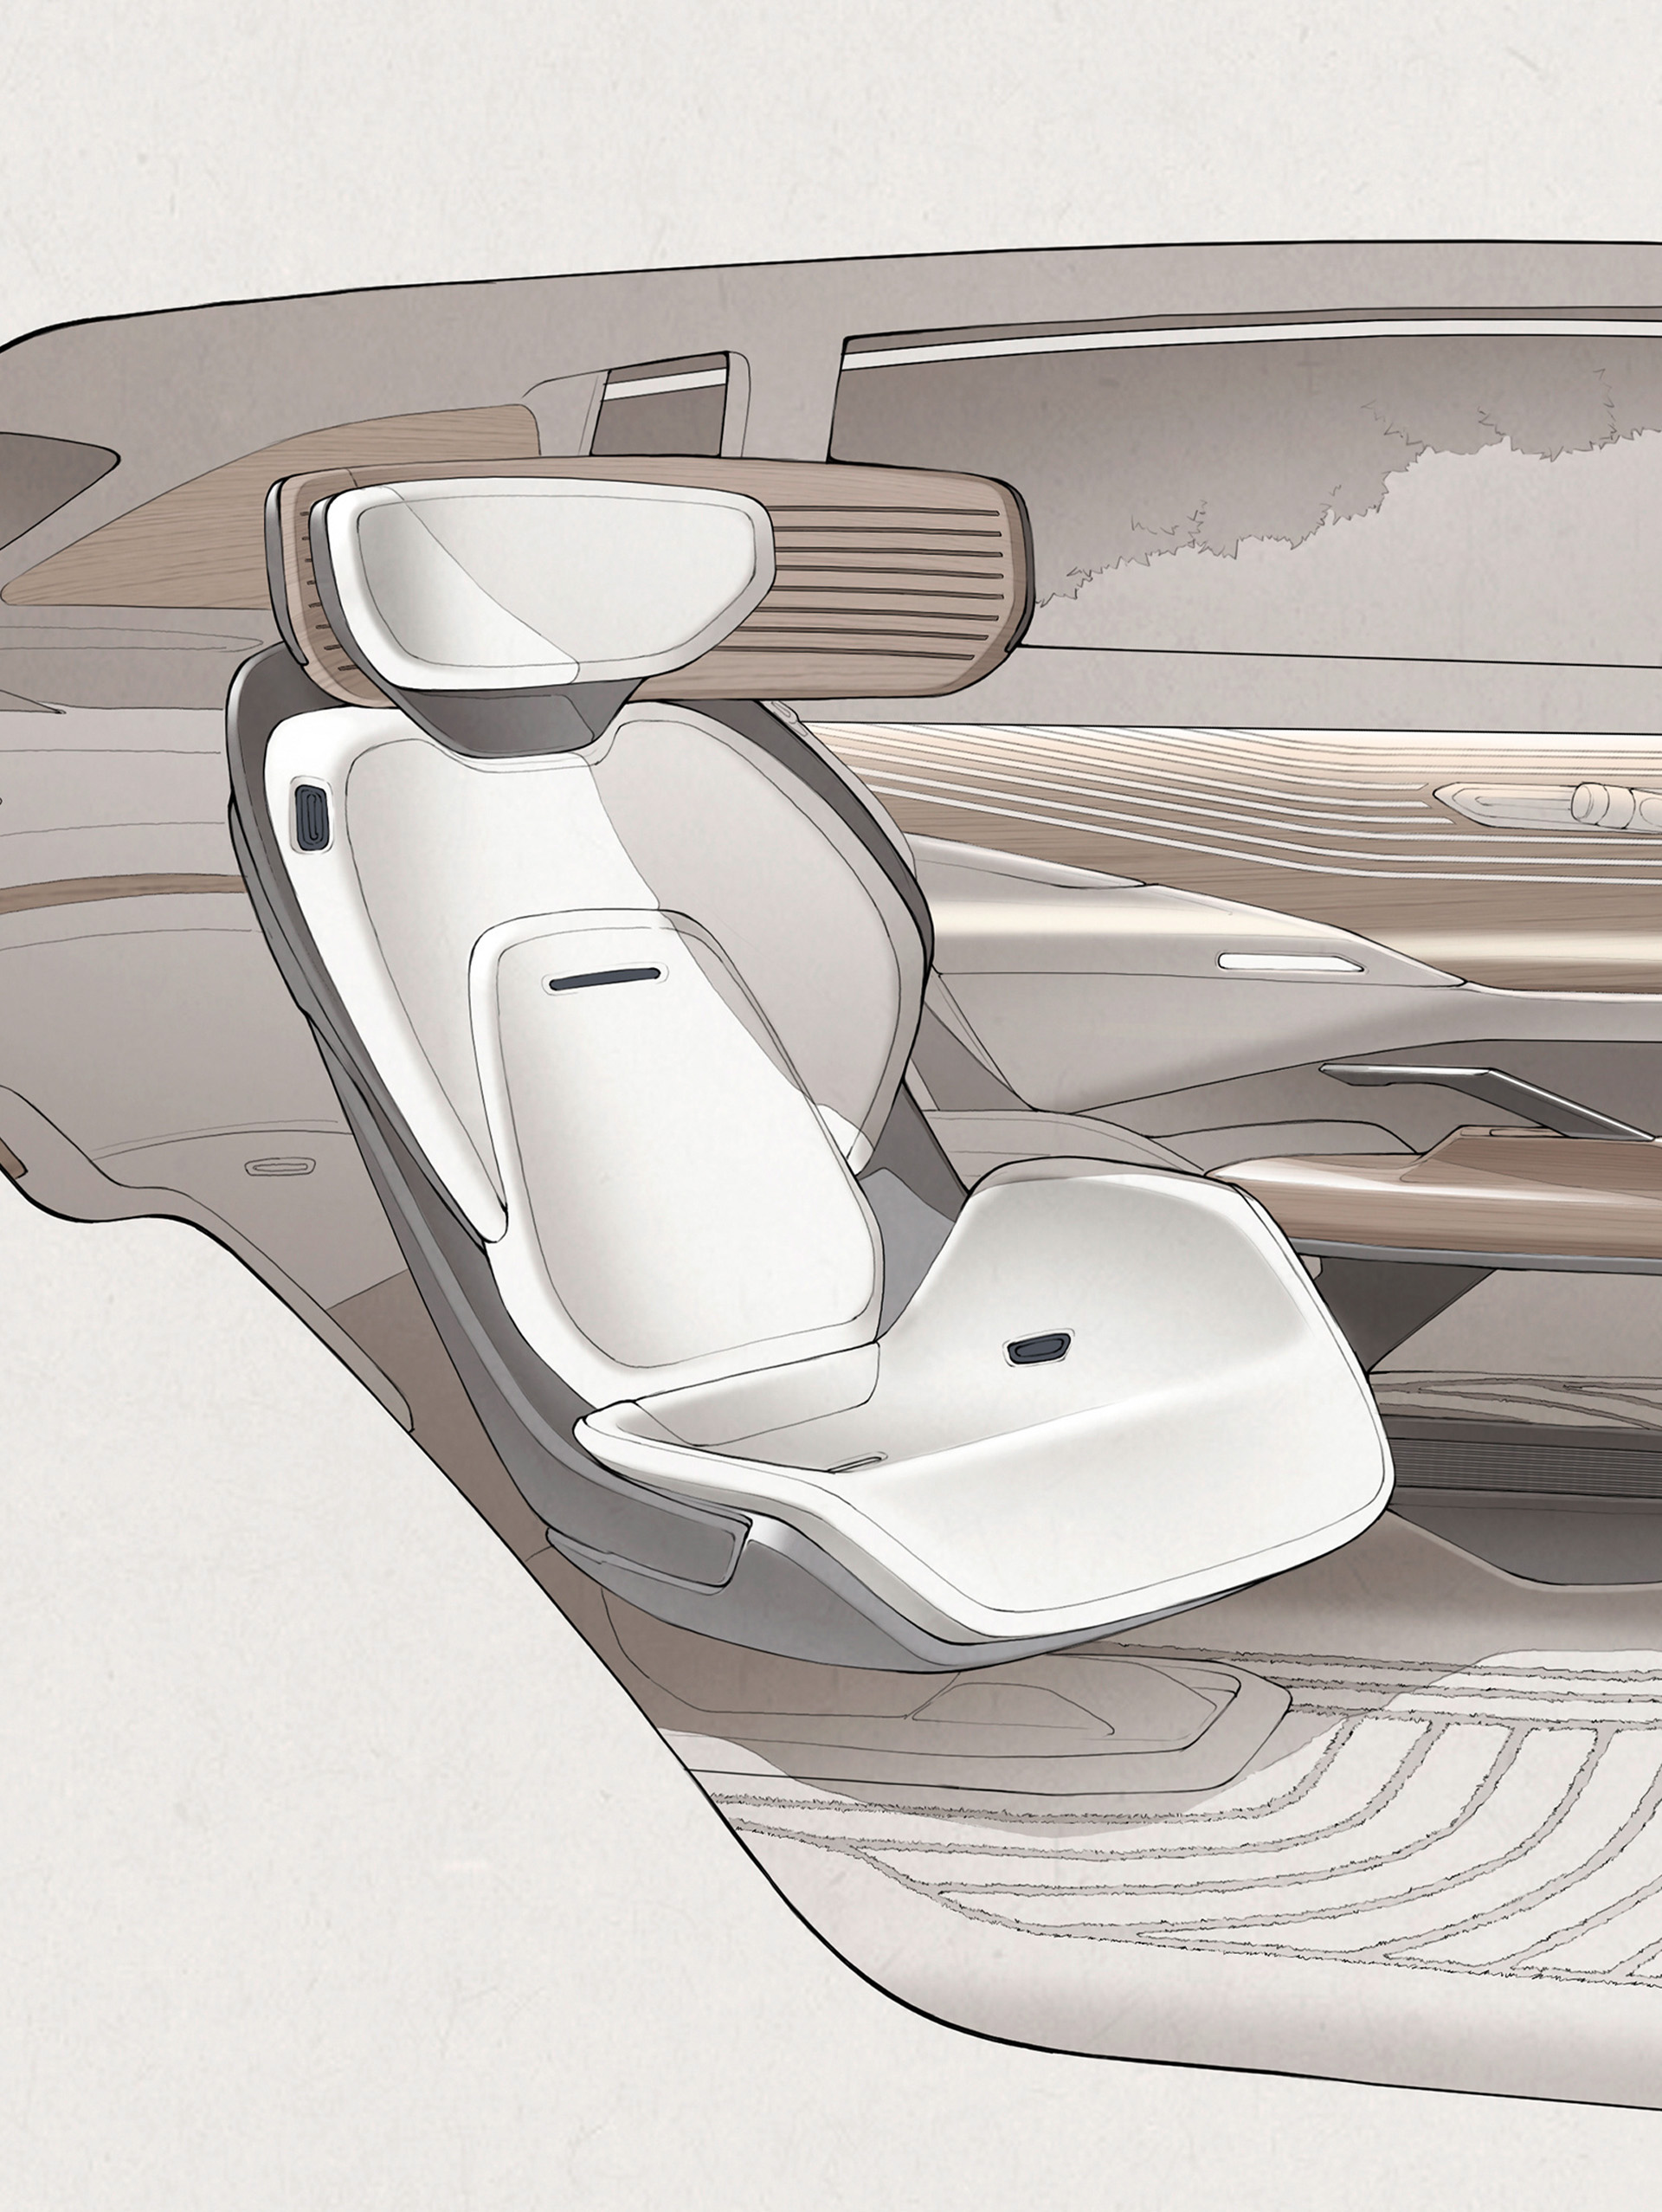  Szkic przedstawia pełnowymiarowy fotel samochodowy w koncepcji Audi urbansphere.